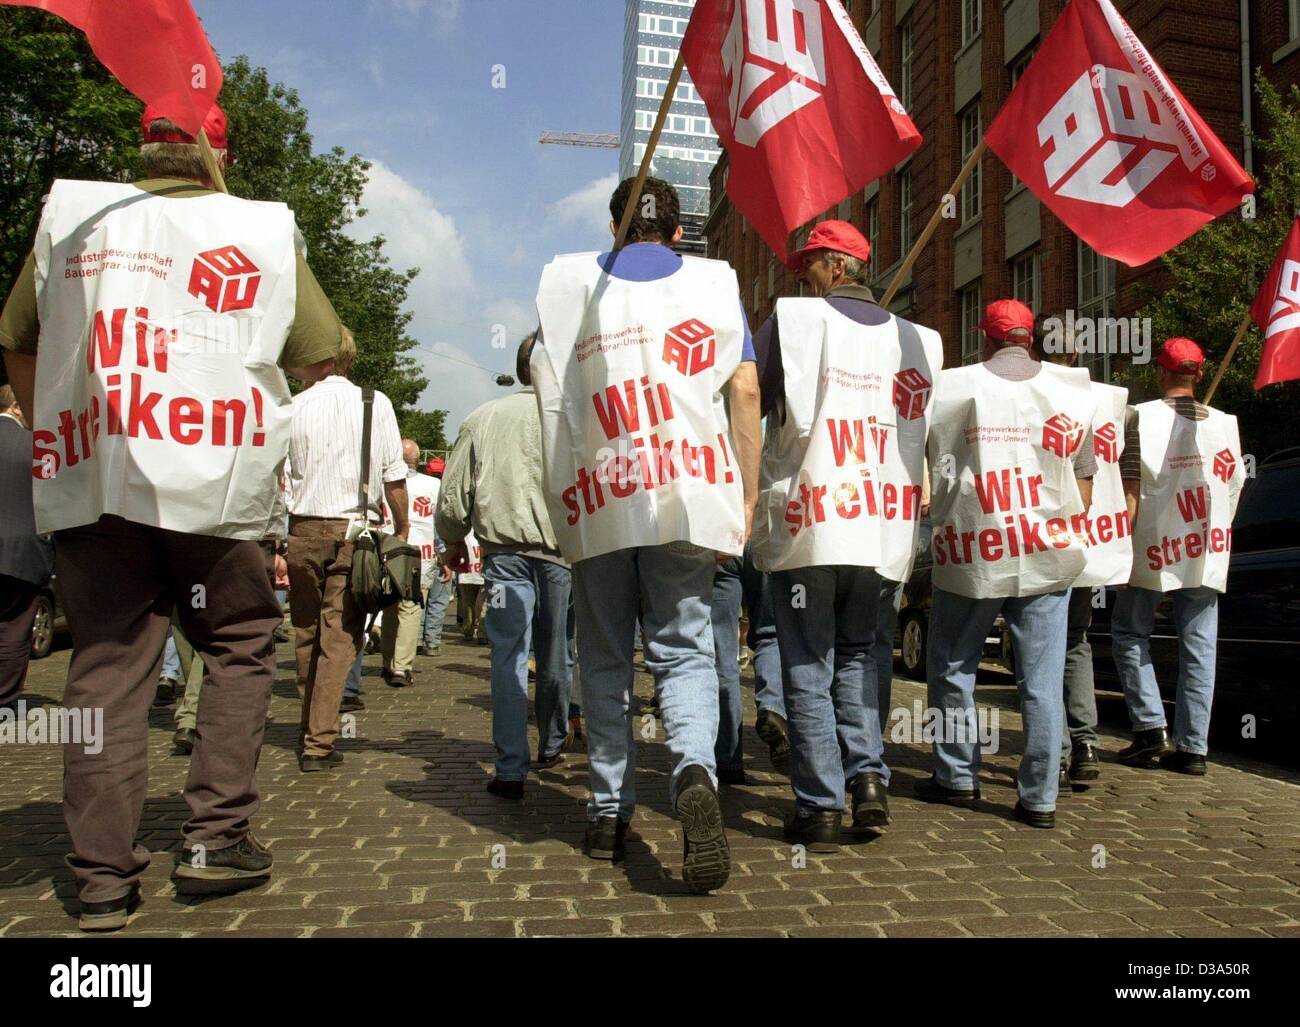 (Dpa) - lavoratori edili marzo con plastica giubbotti di sciopero e unione bandiere per un sito di costruzione ad Amburgo, Germania, 17 giugno 2002. È il primo sciopero a livello nazionale nel settore della costruzione in Germania del dopoguerra. Il sindacato è stato in parla di un 4,5 per cento aumento dei salari con i datori di lavoro Foto Stock